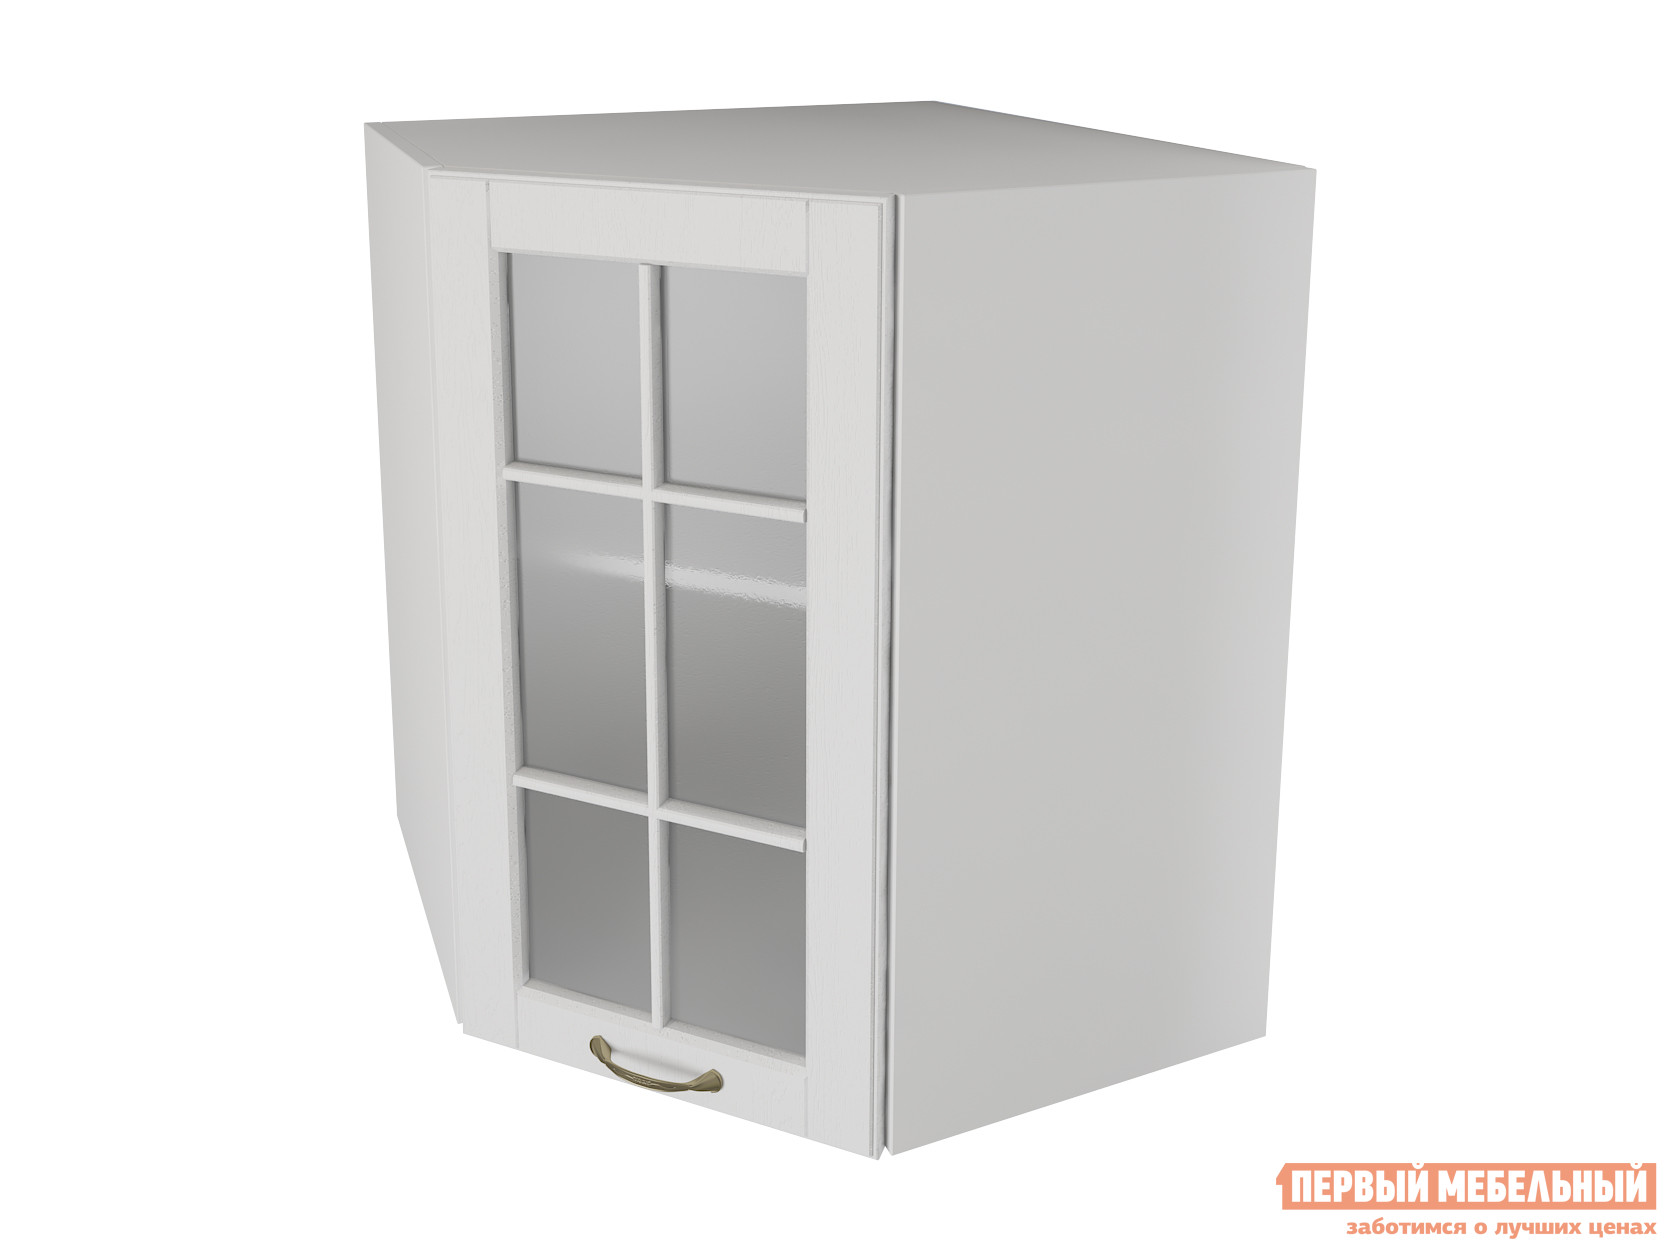 Кухонный модуль  Шкаф угловой трапеция 1 дверь со стеклом 60 см Палермо Бианко